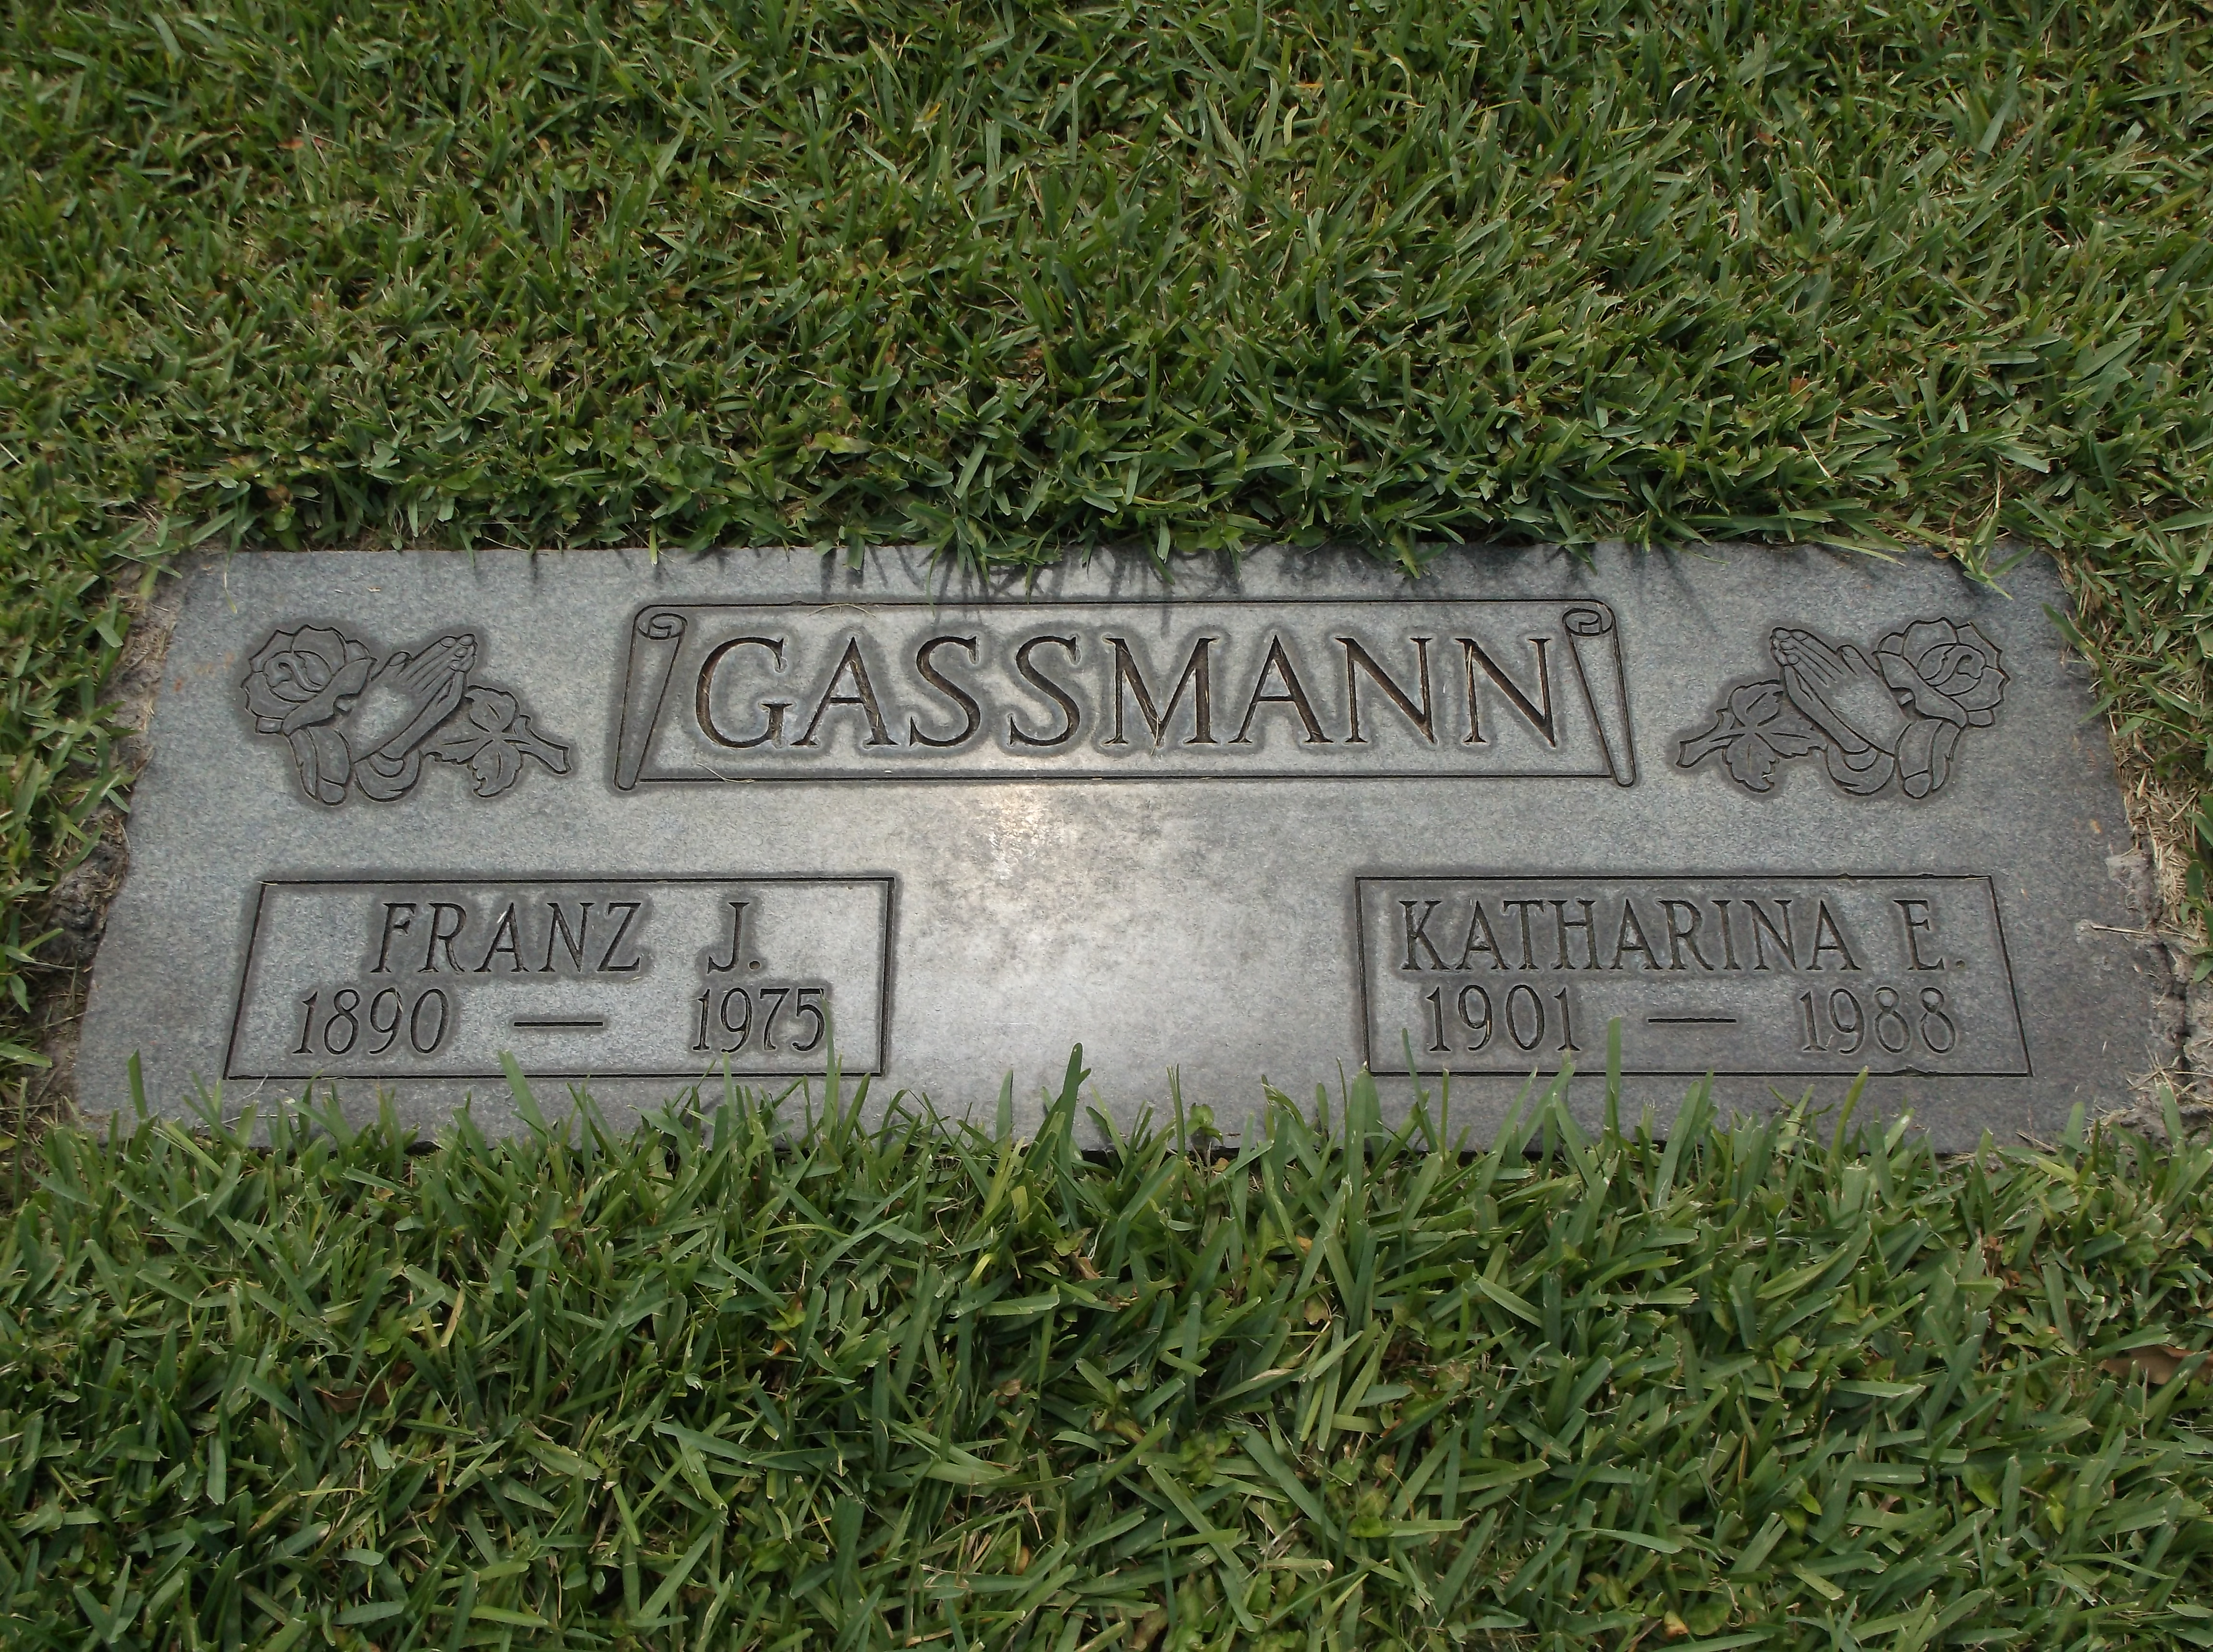 Franz J Gassmann